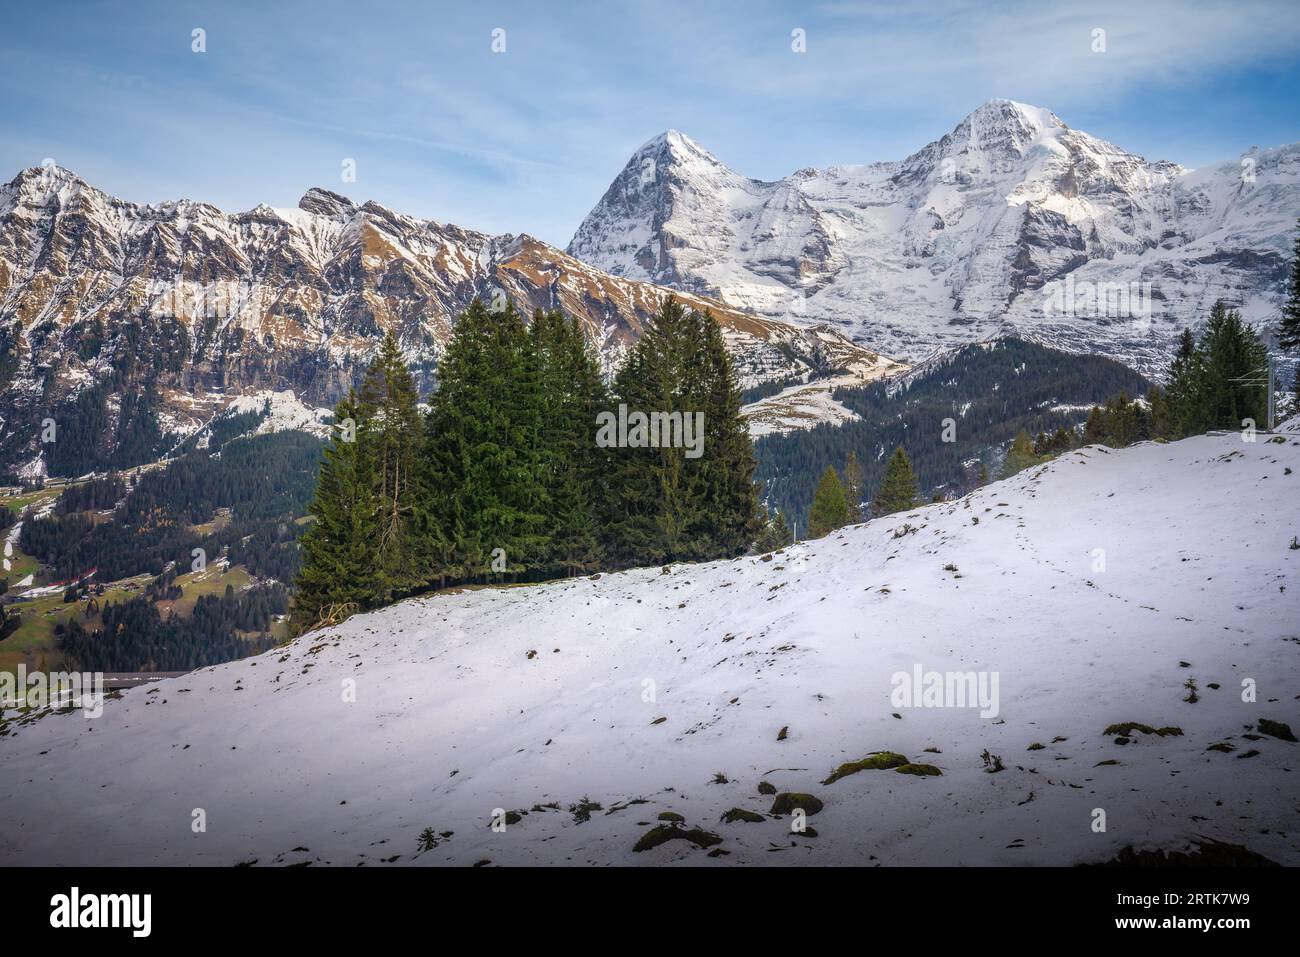 Tschuggen, Eiger and Monch Mountains at Swiss Alps - Lauterbrunnen, Switzerland Stock Photo